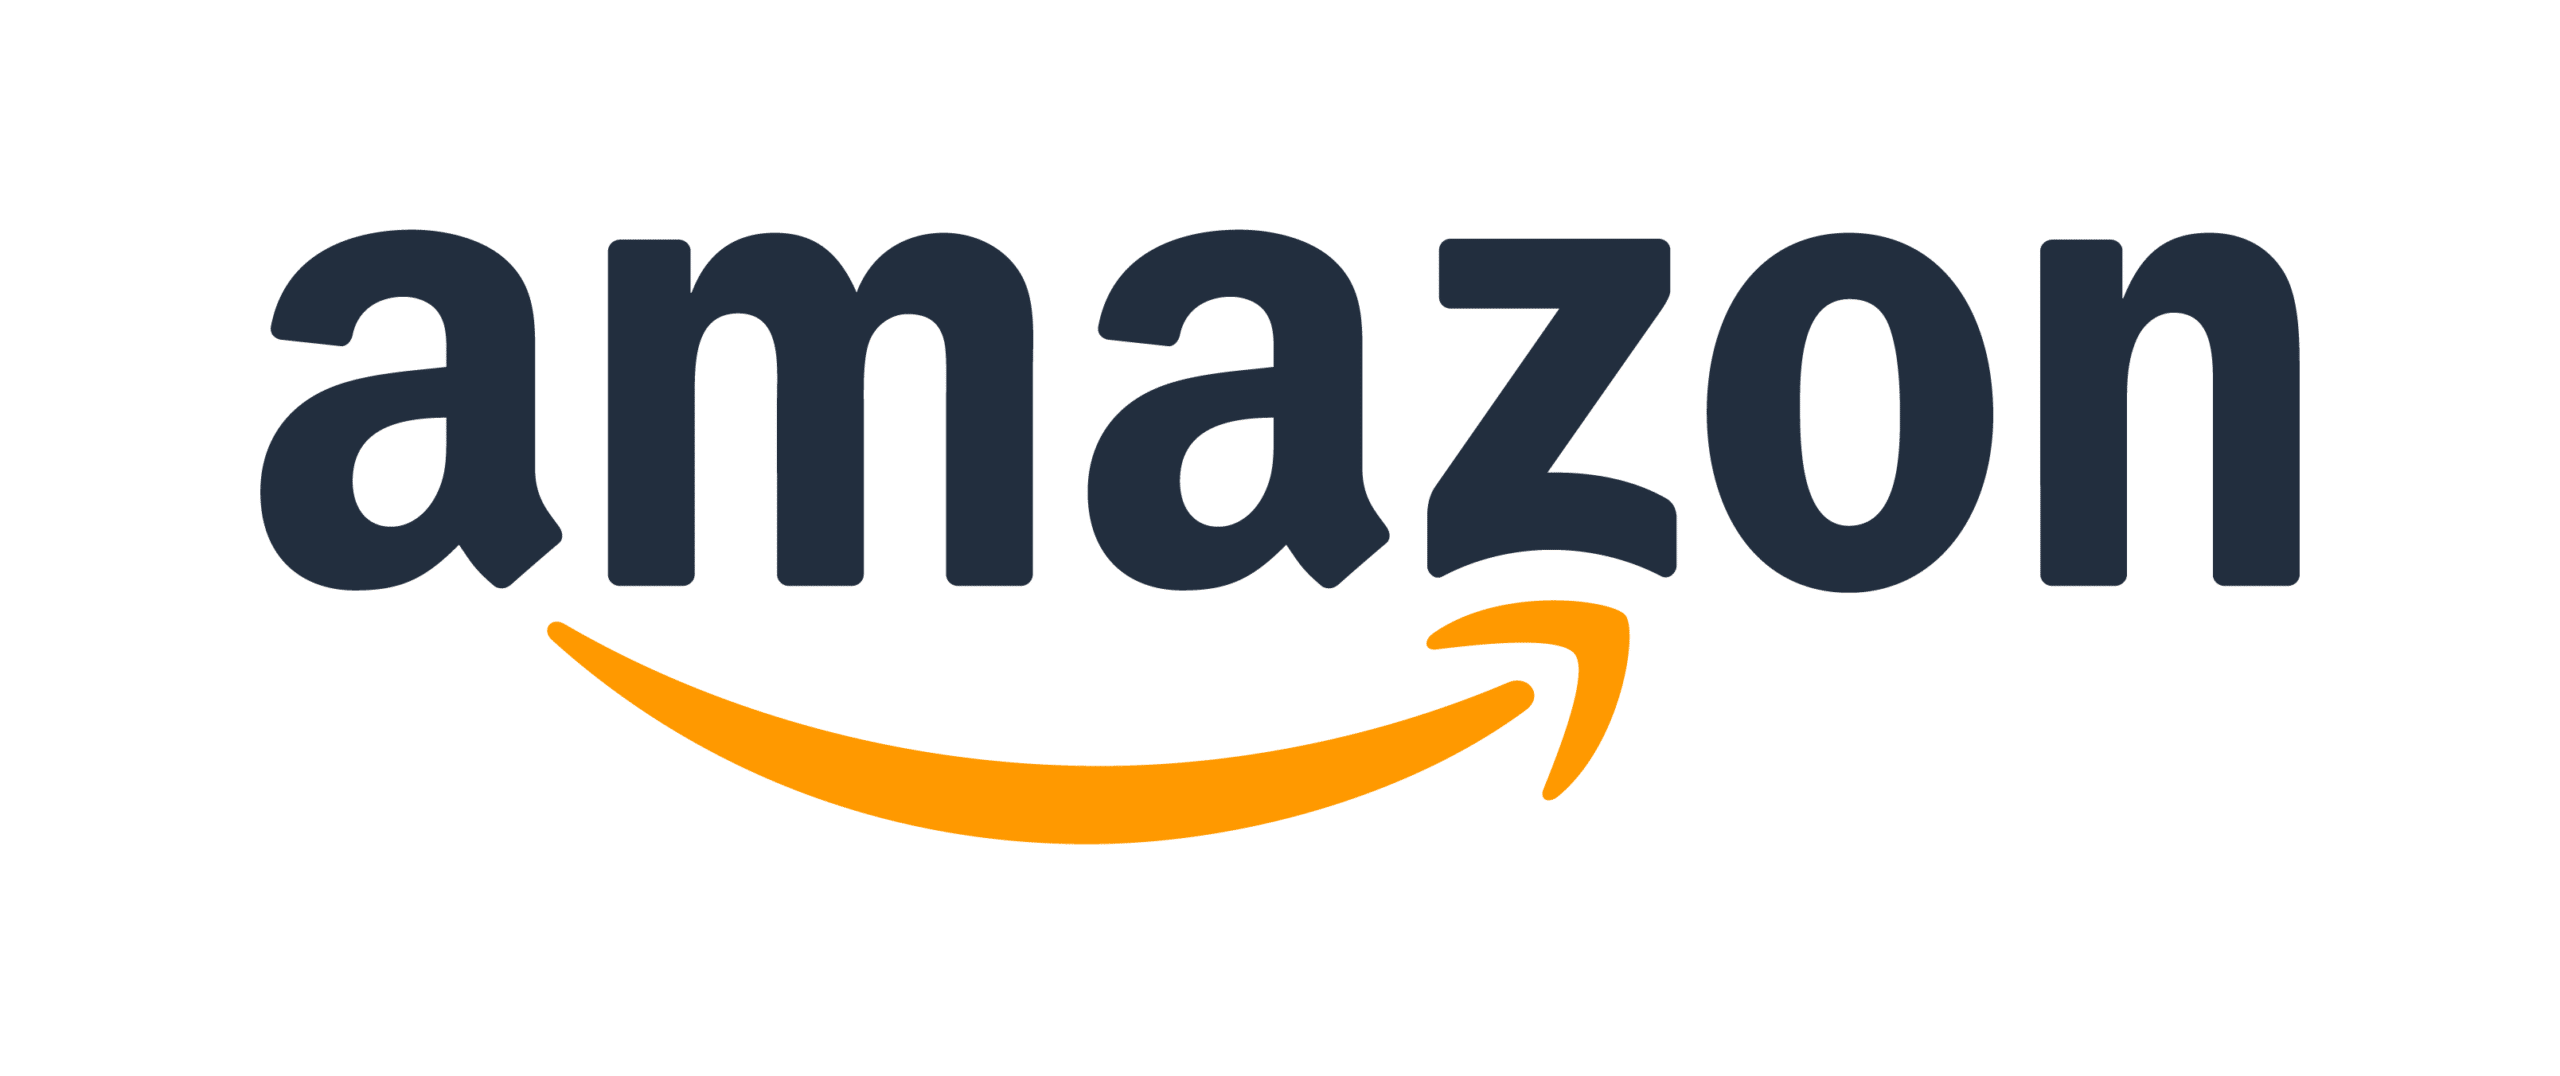 Amazon logo image.